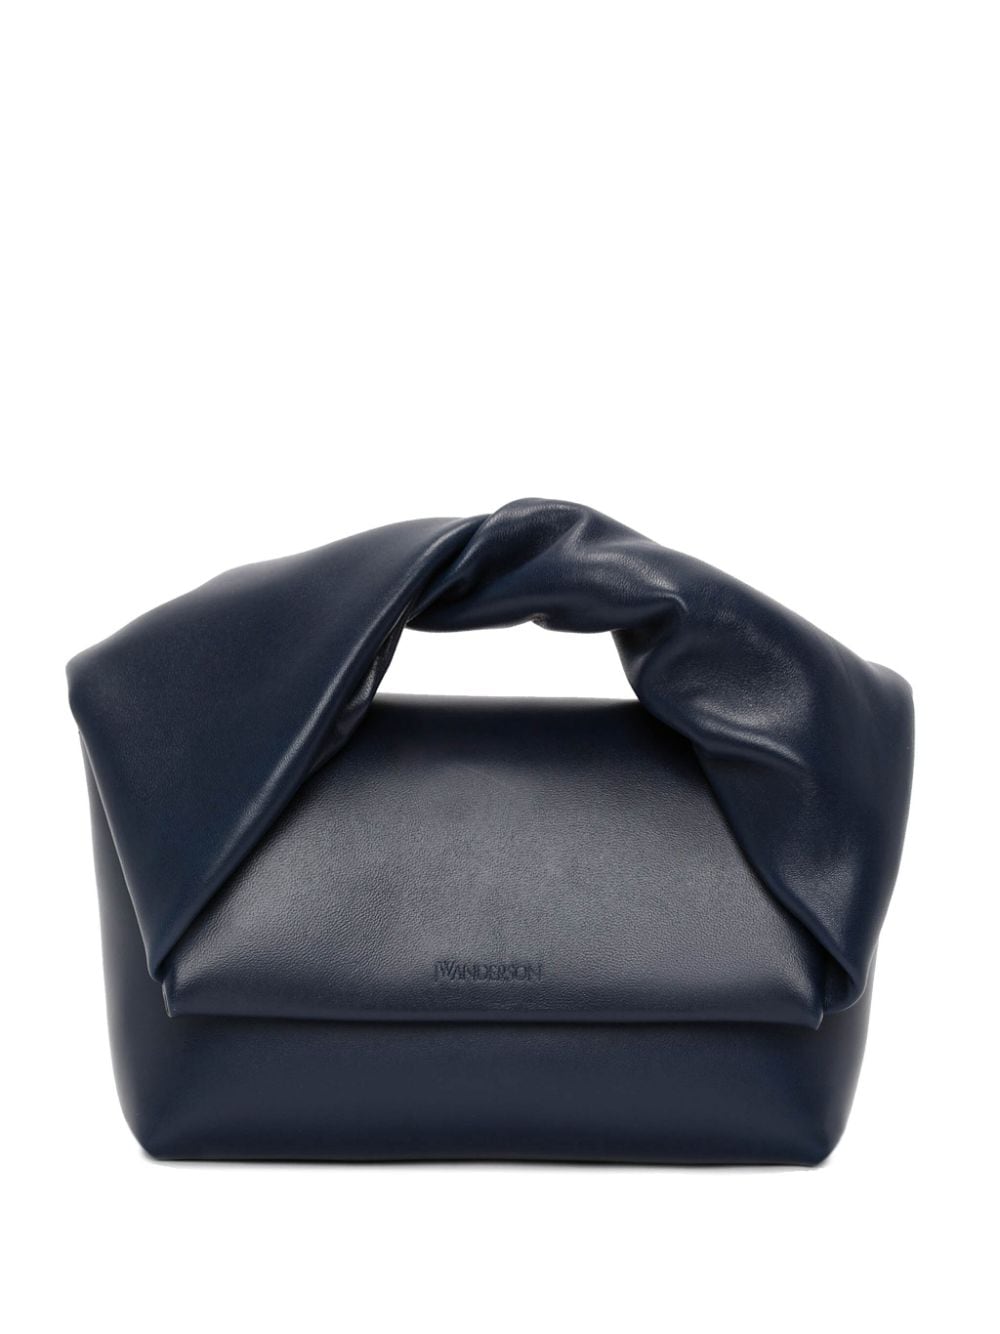 JW Anderson medium Twister leather crossbody bag - Blue